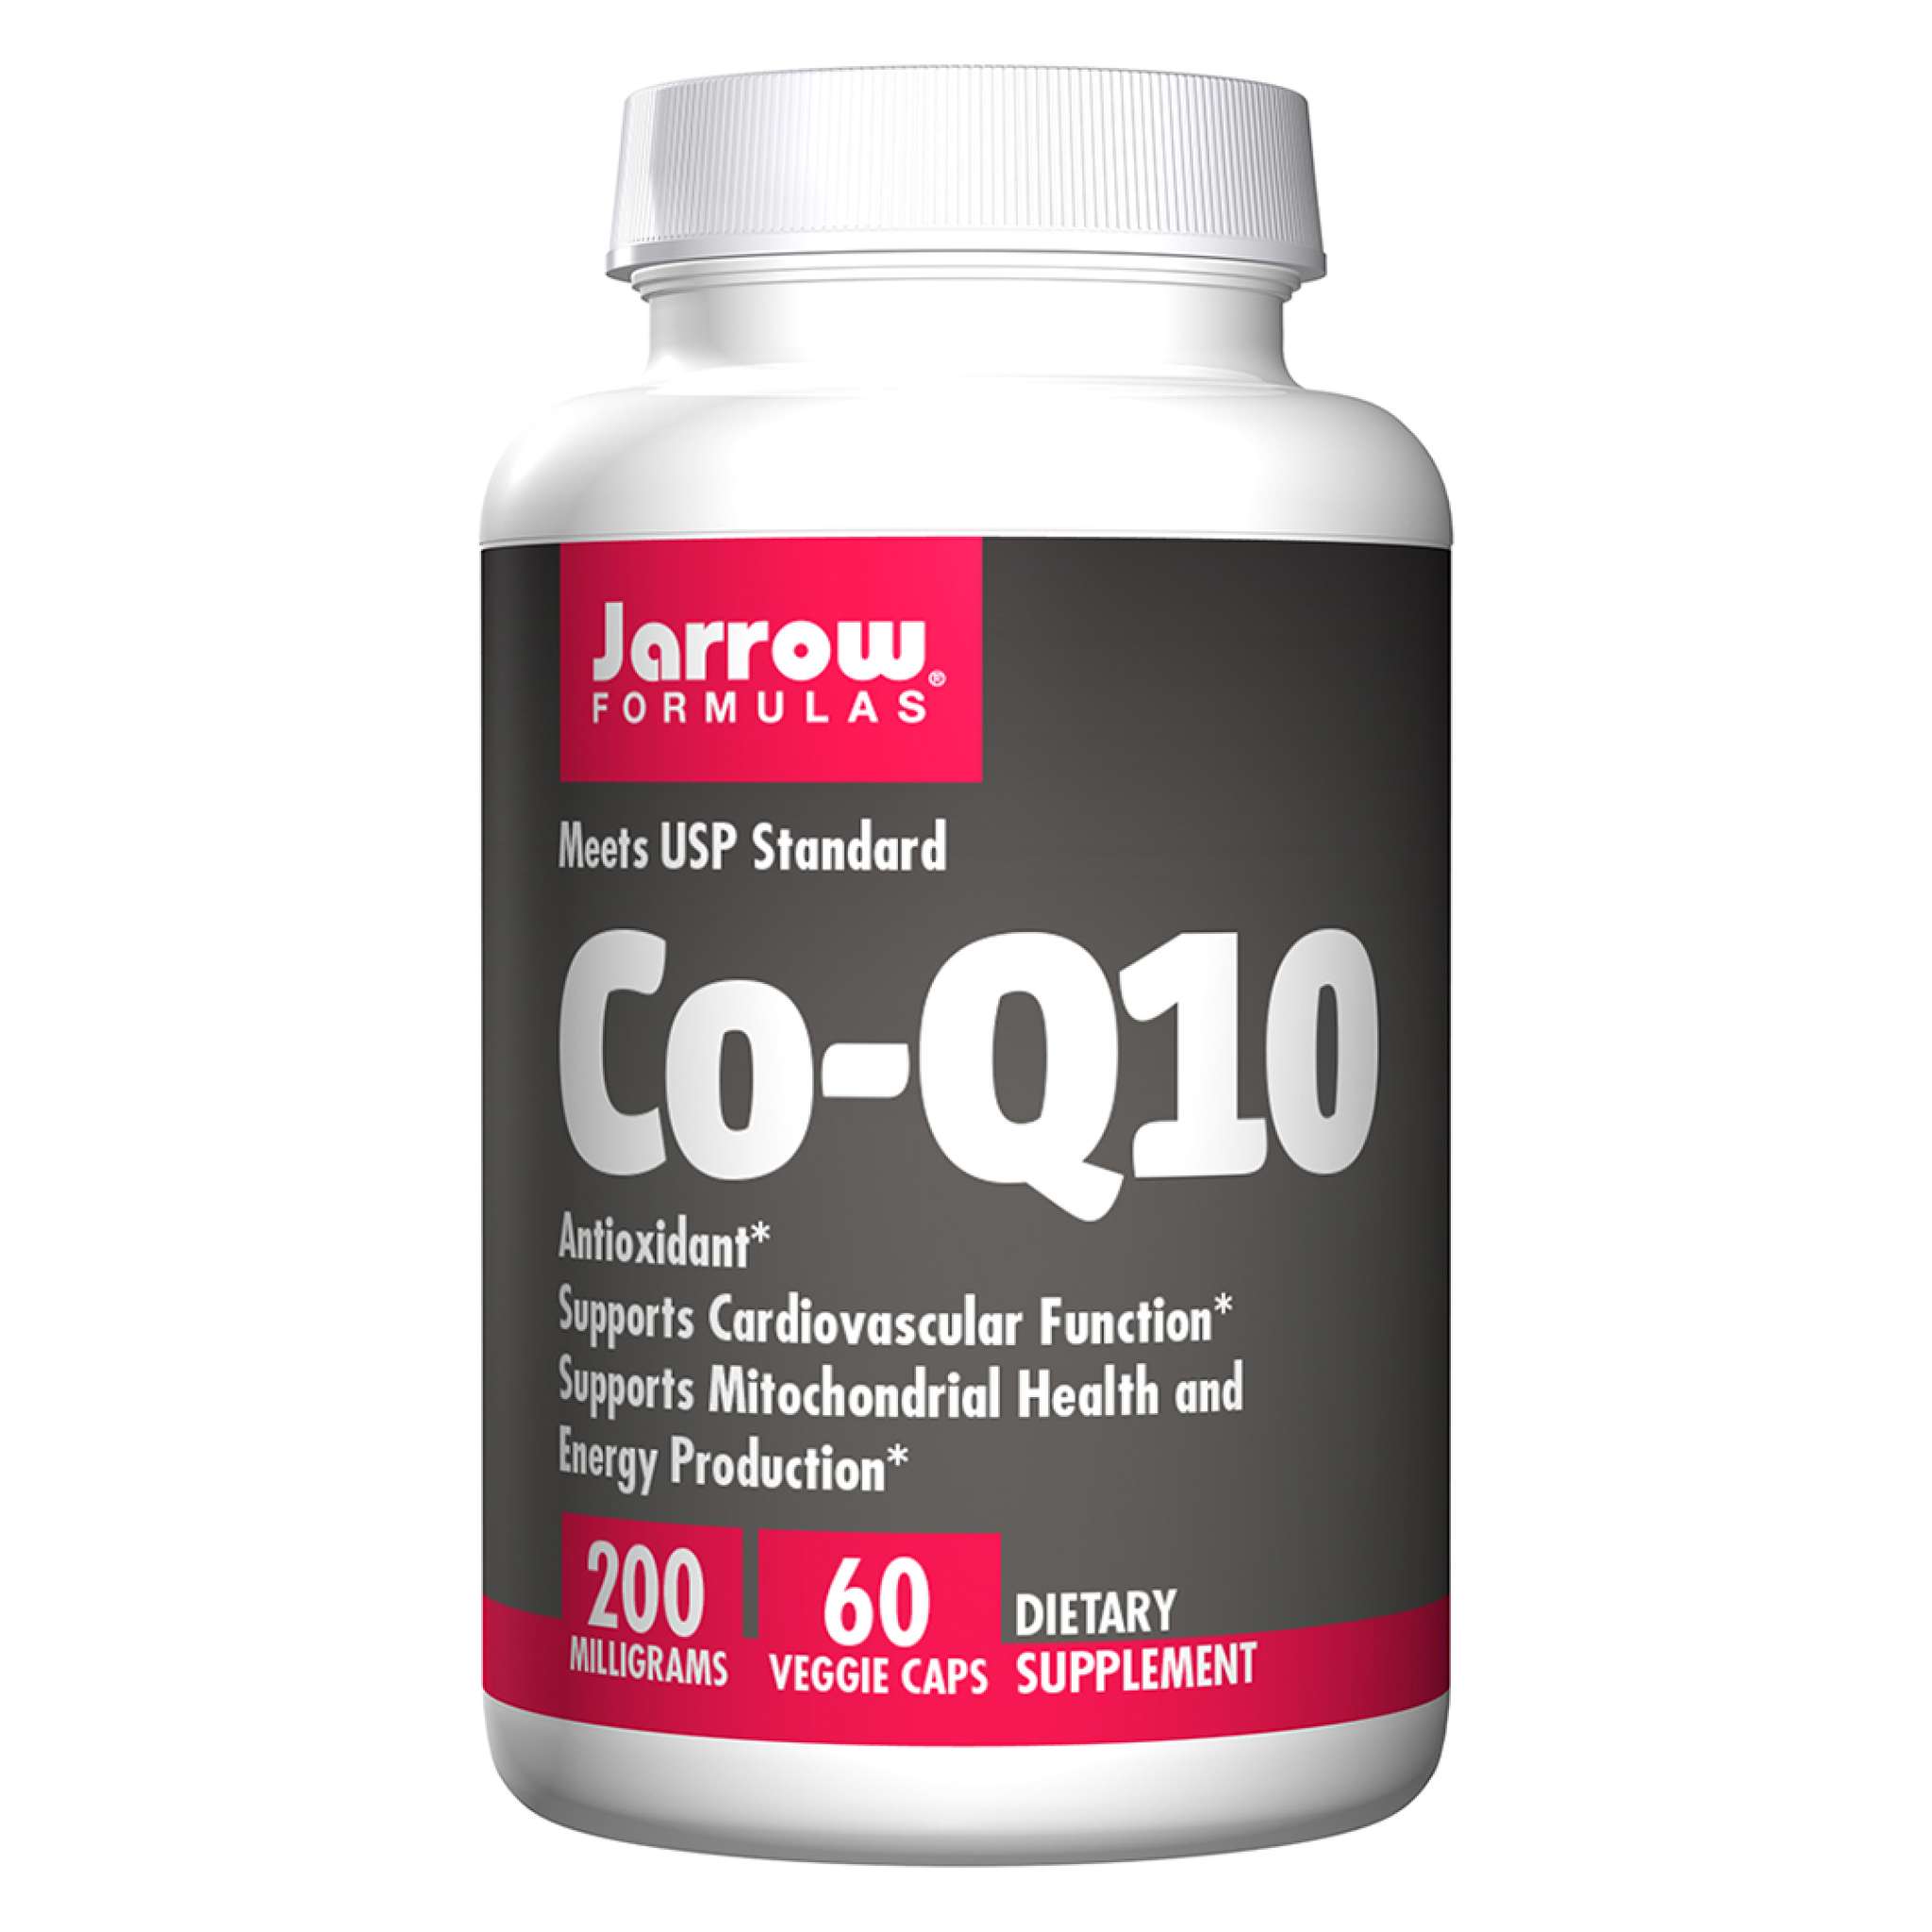 Jarrow Formulas - Coq10 200 mg Ubiquinone